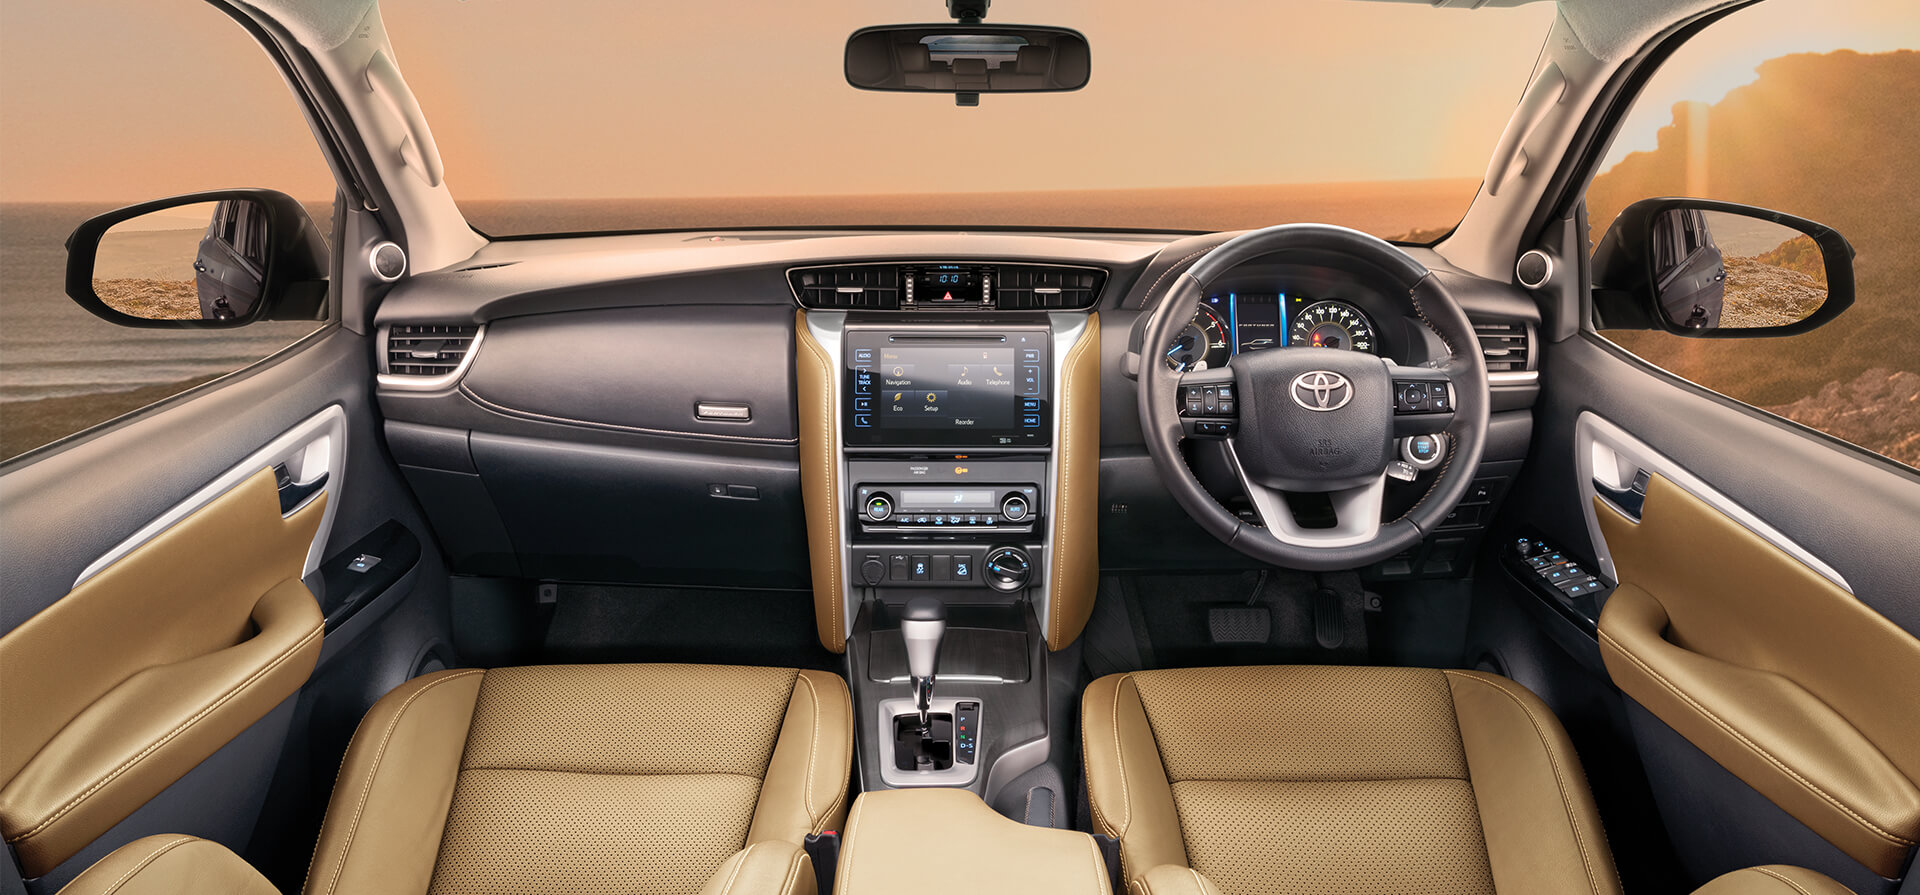 Toyota Fortuner 2020 Interior